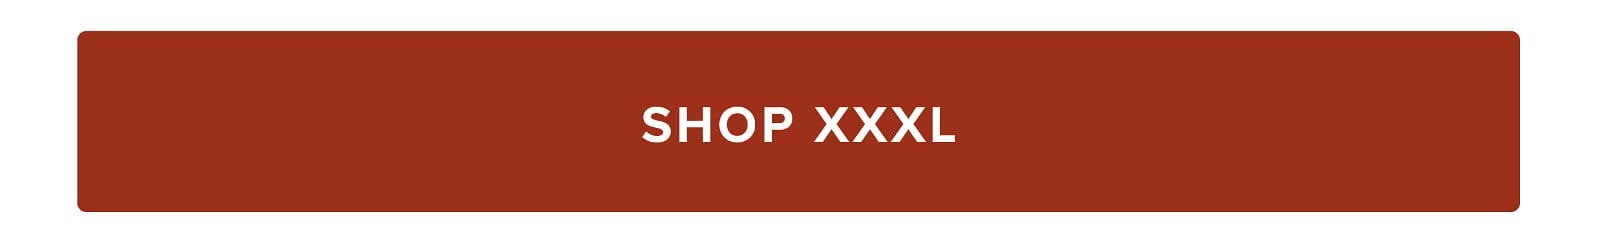 Shop XXXL